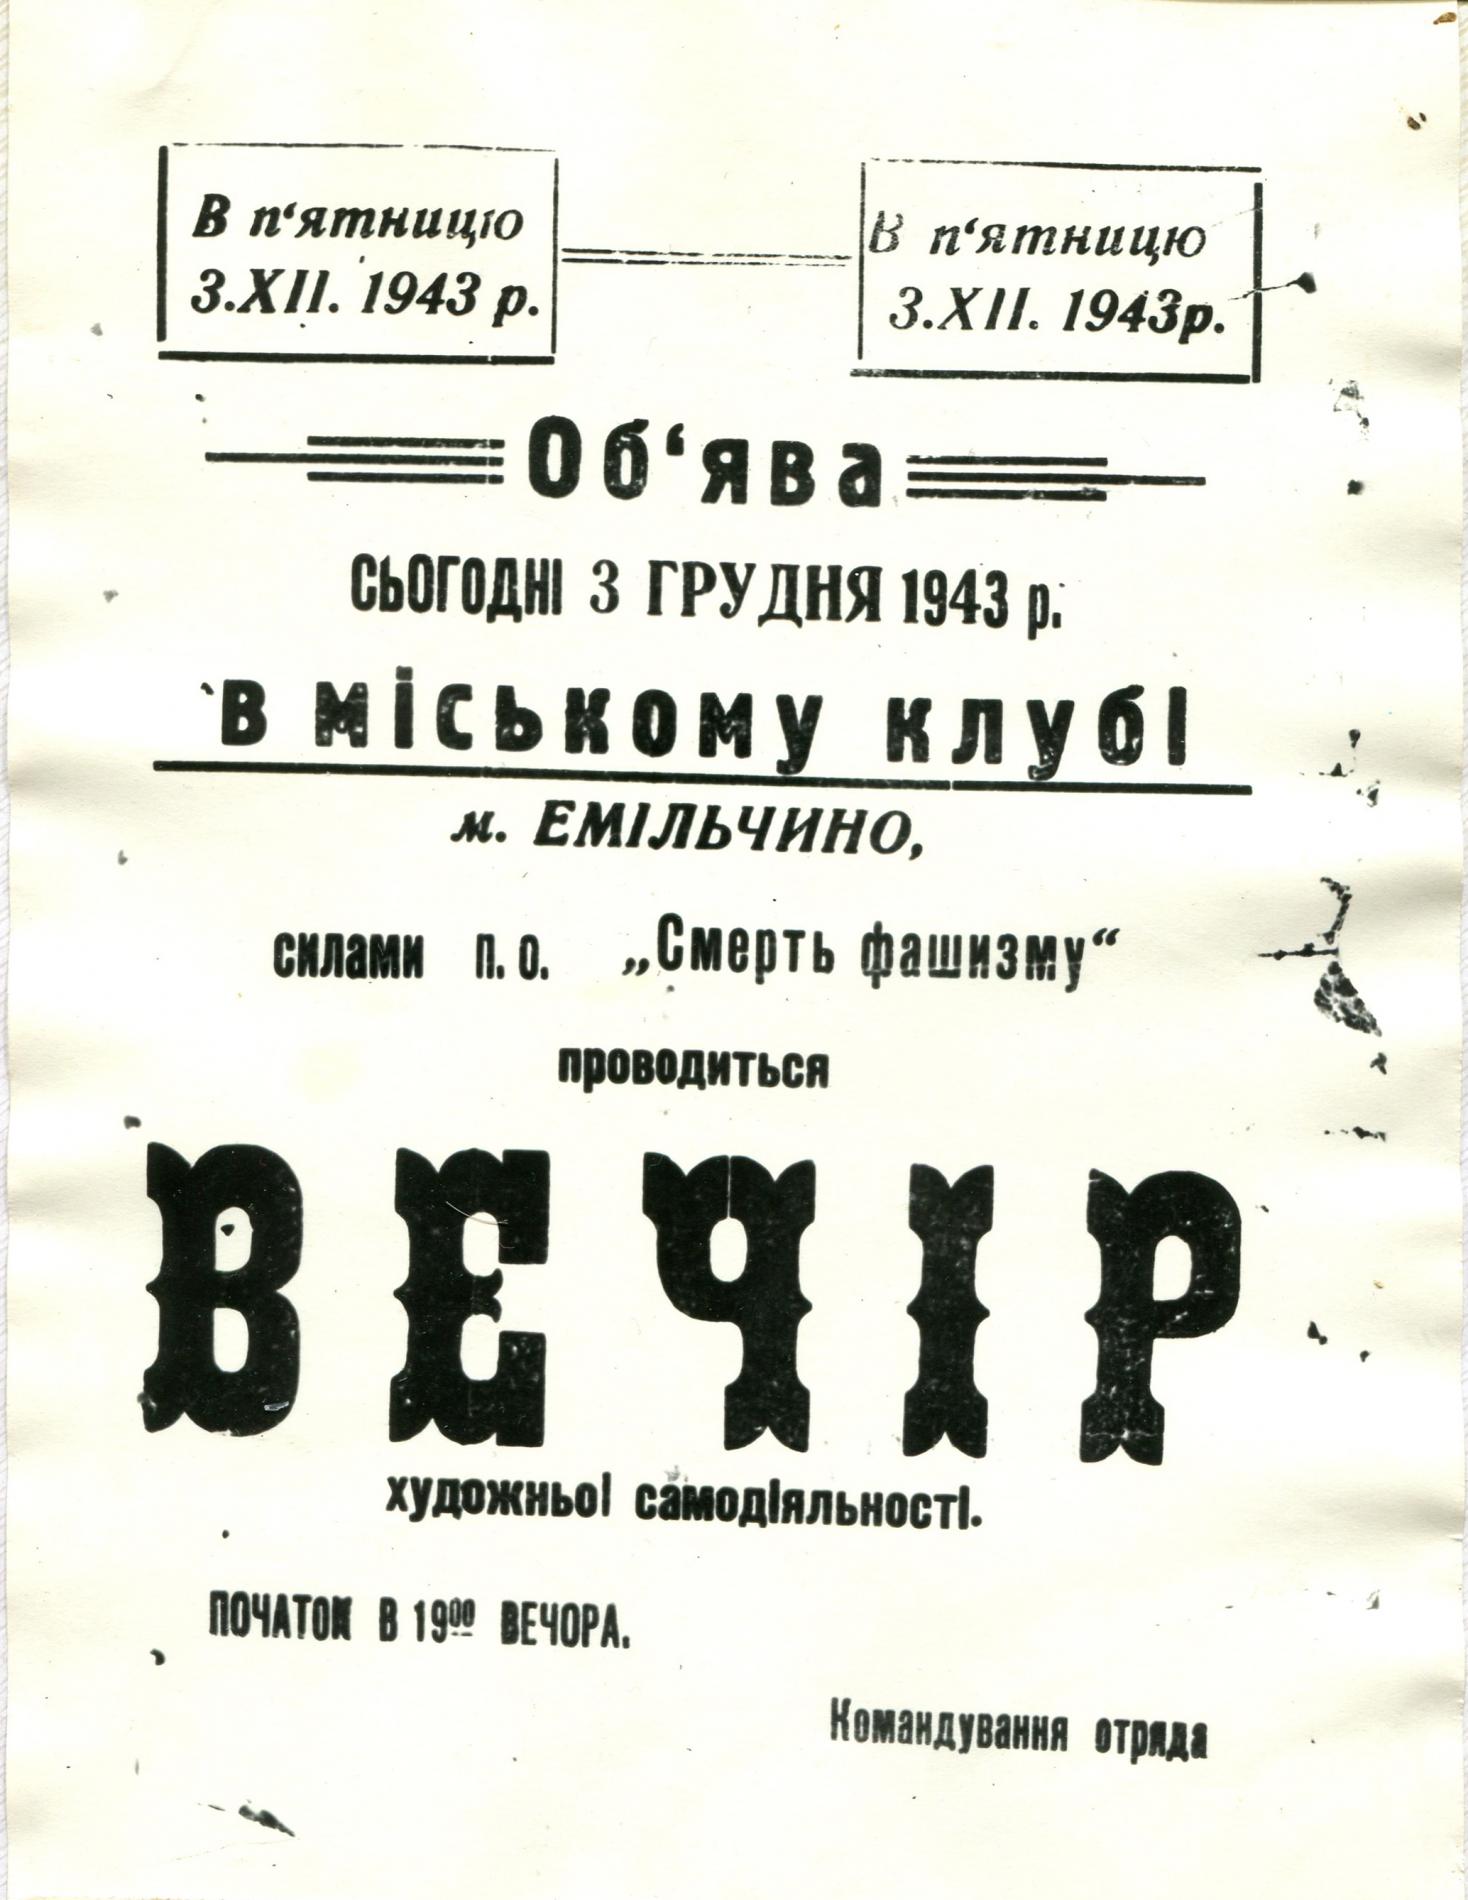 Объявление о вечере художественной самодеятельности партизан кавалерийского соединения М.И. Наумова, 1943 г.